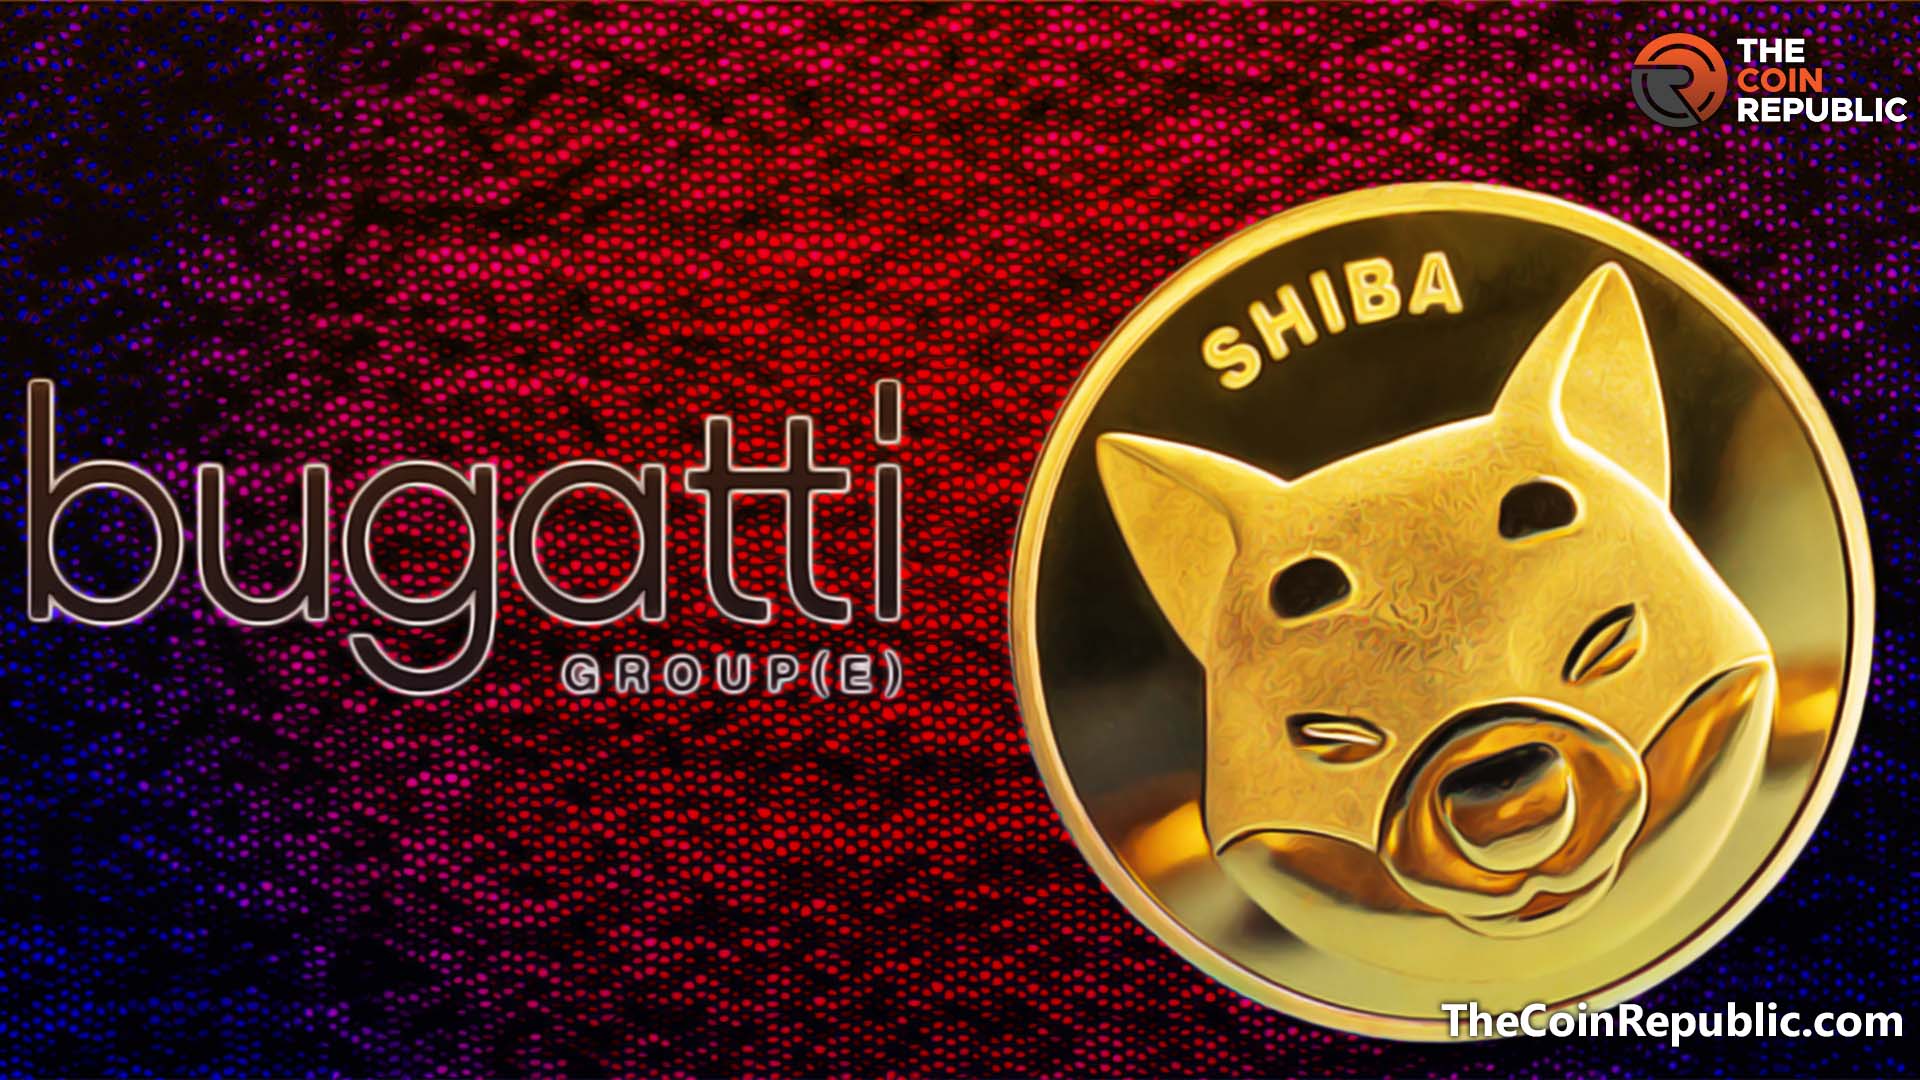 Shiba Inu x Bugatti Group: Fill All Your “SHIB” Token in “Bugatti” Bags